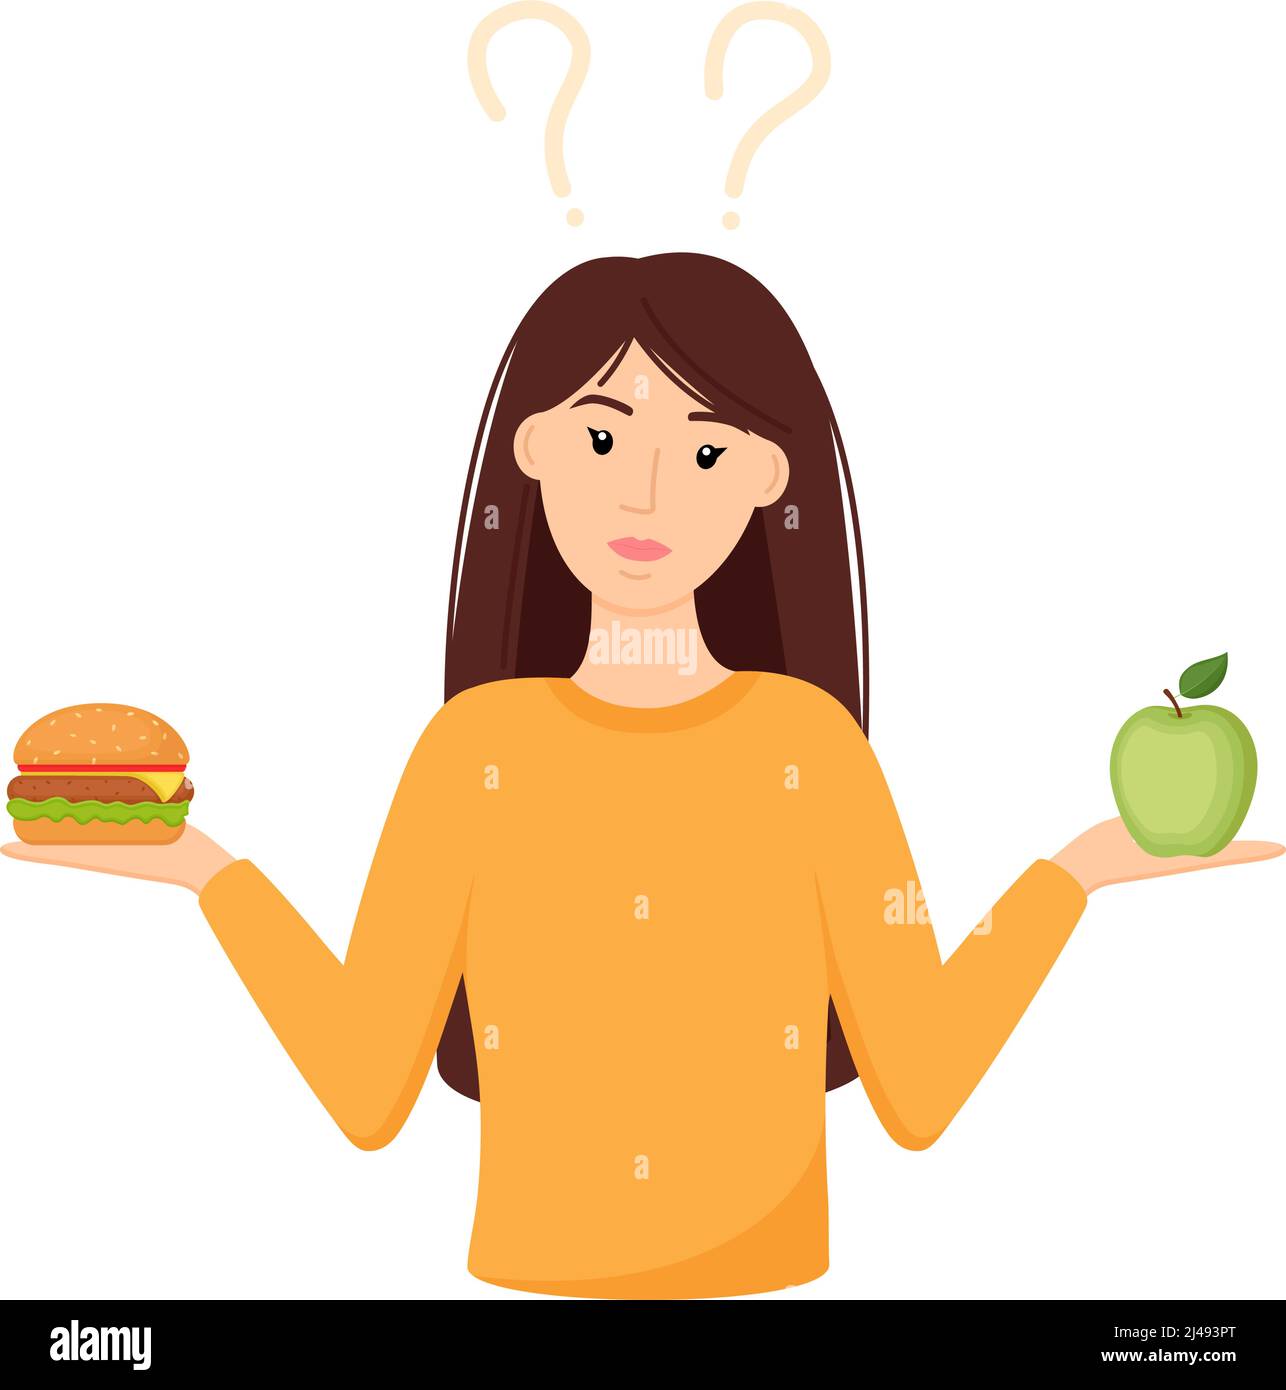 Frau die Wahl zwischen gesunden und ungesunden Lebensmitteln. Auswahl zwischen Apfel und Burger. Konzeptvektordarstellung Stock Vektor